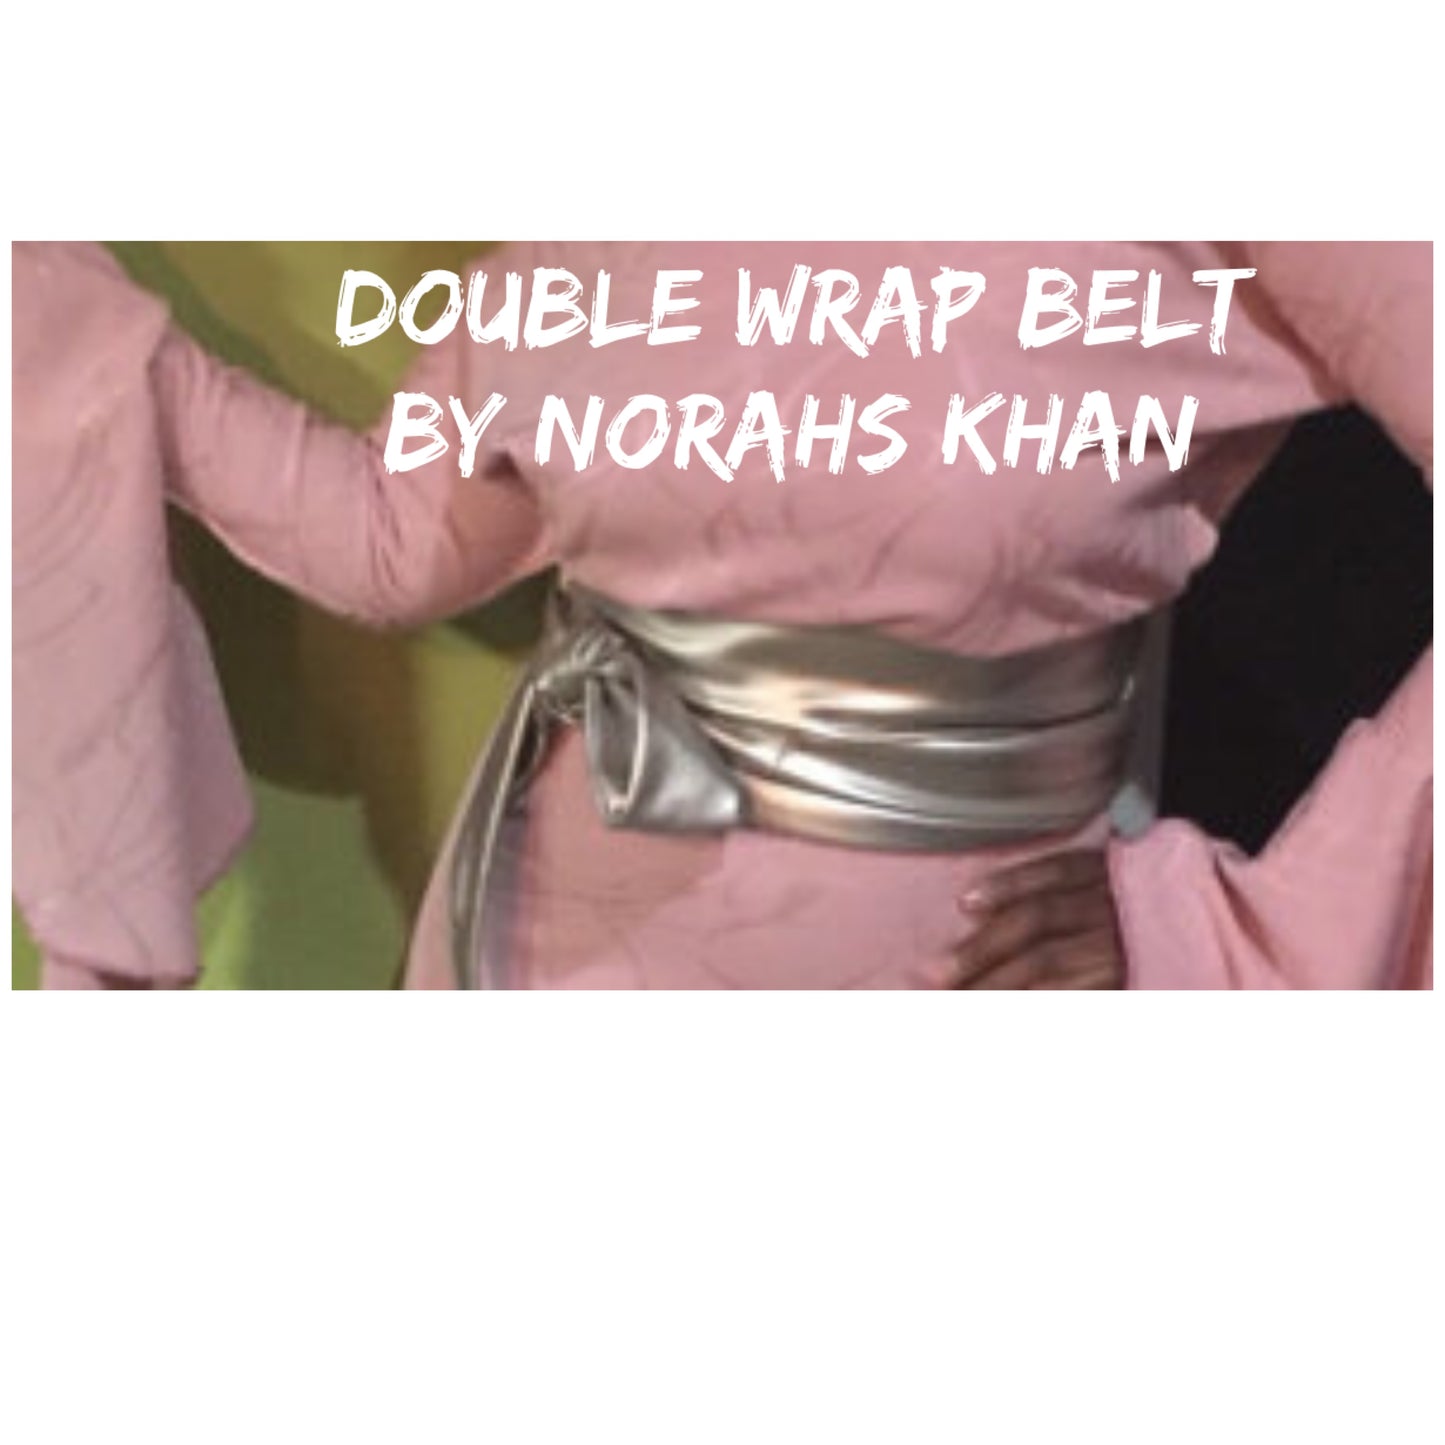 Double Wrap Belt